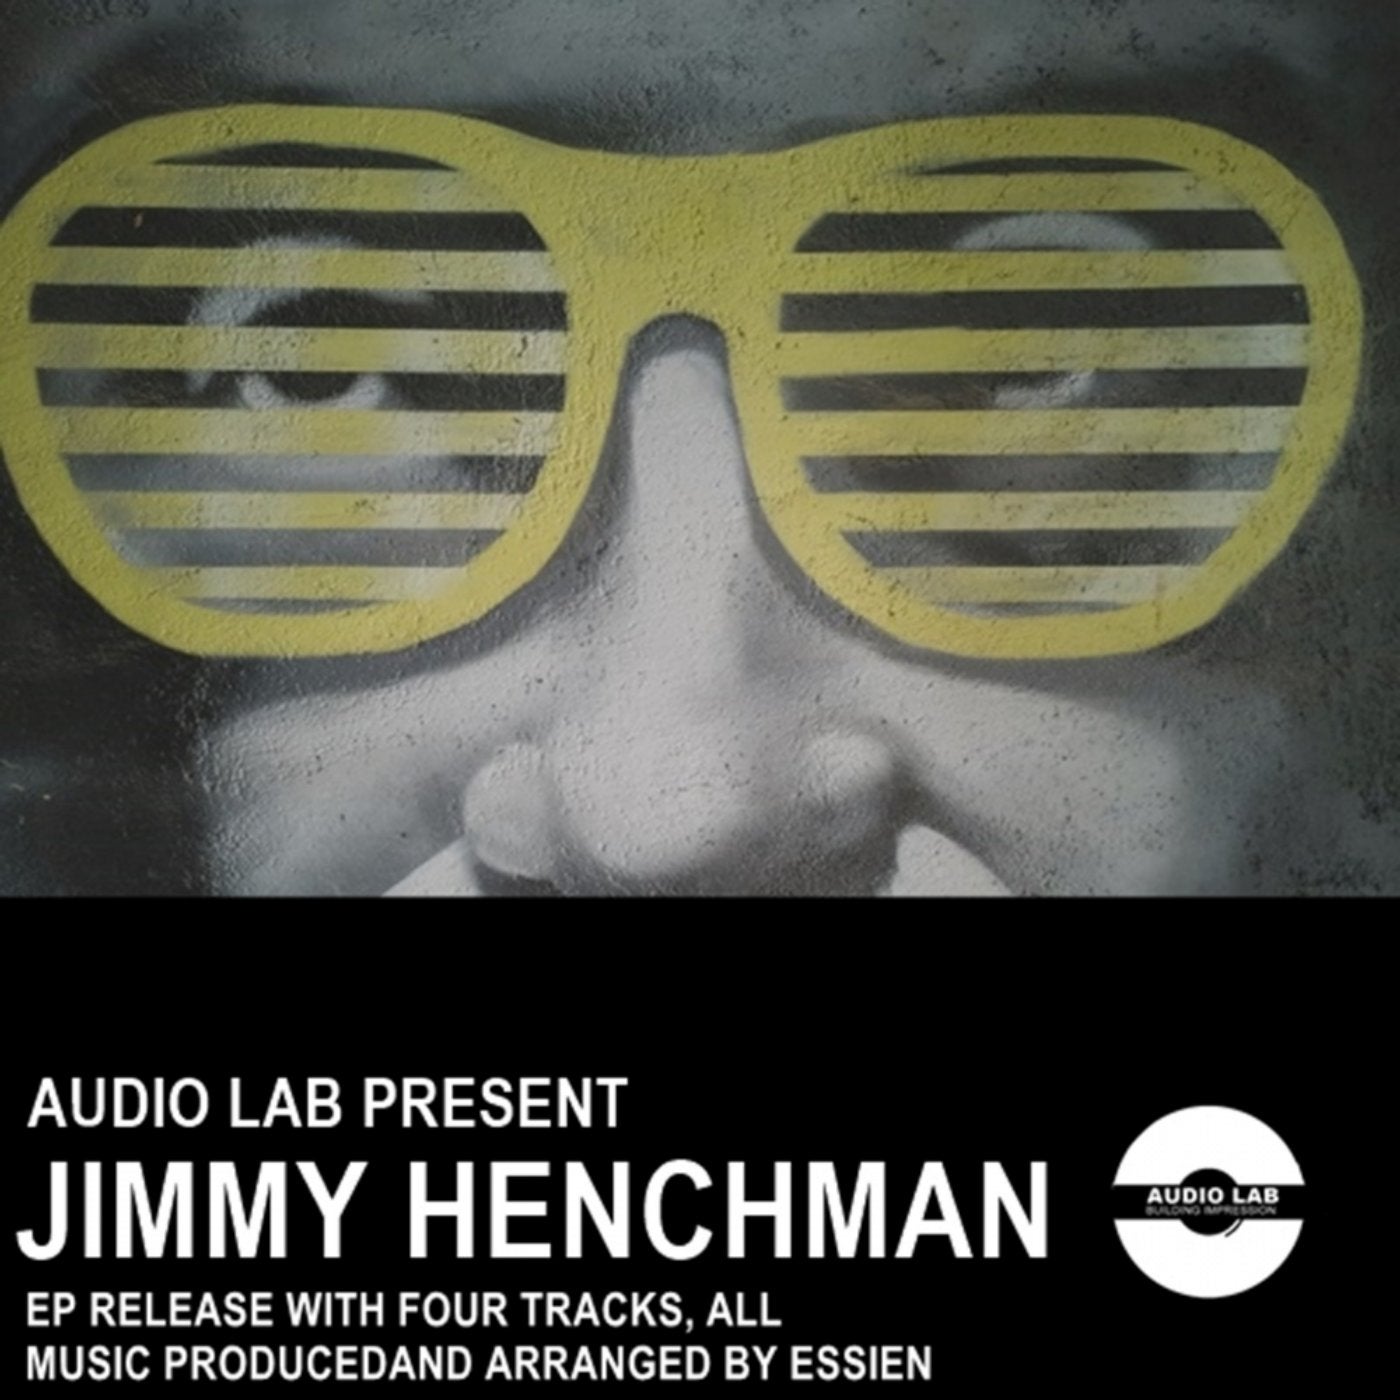 Jimmy Henchman EP